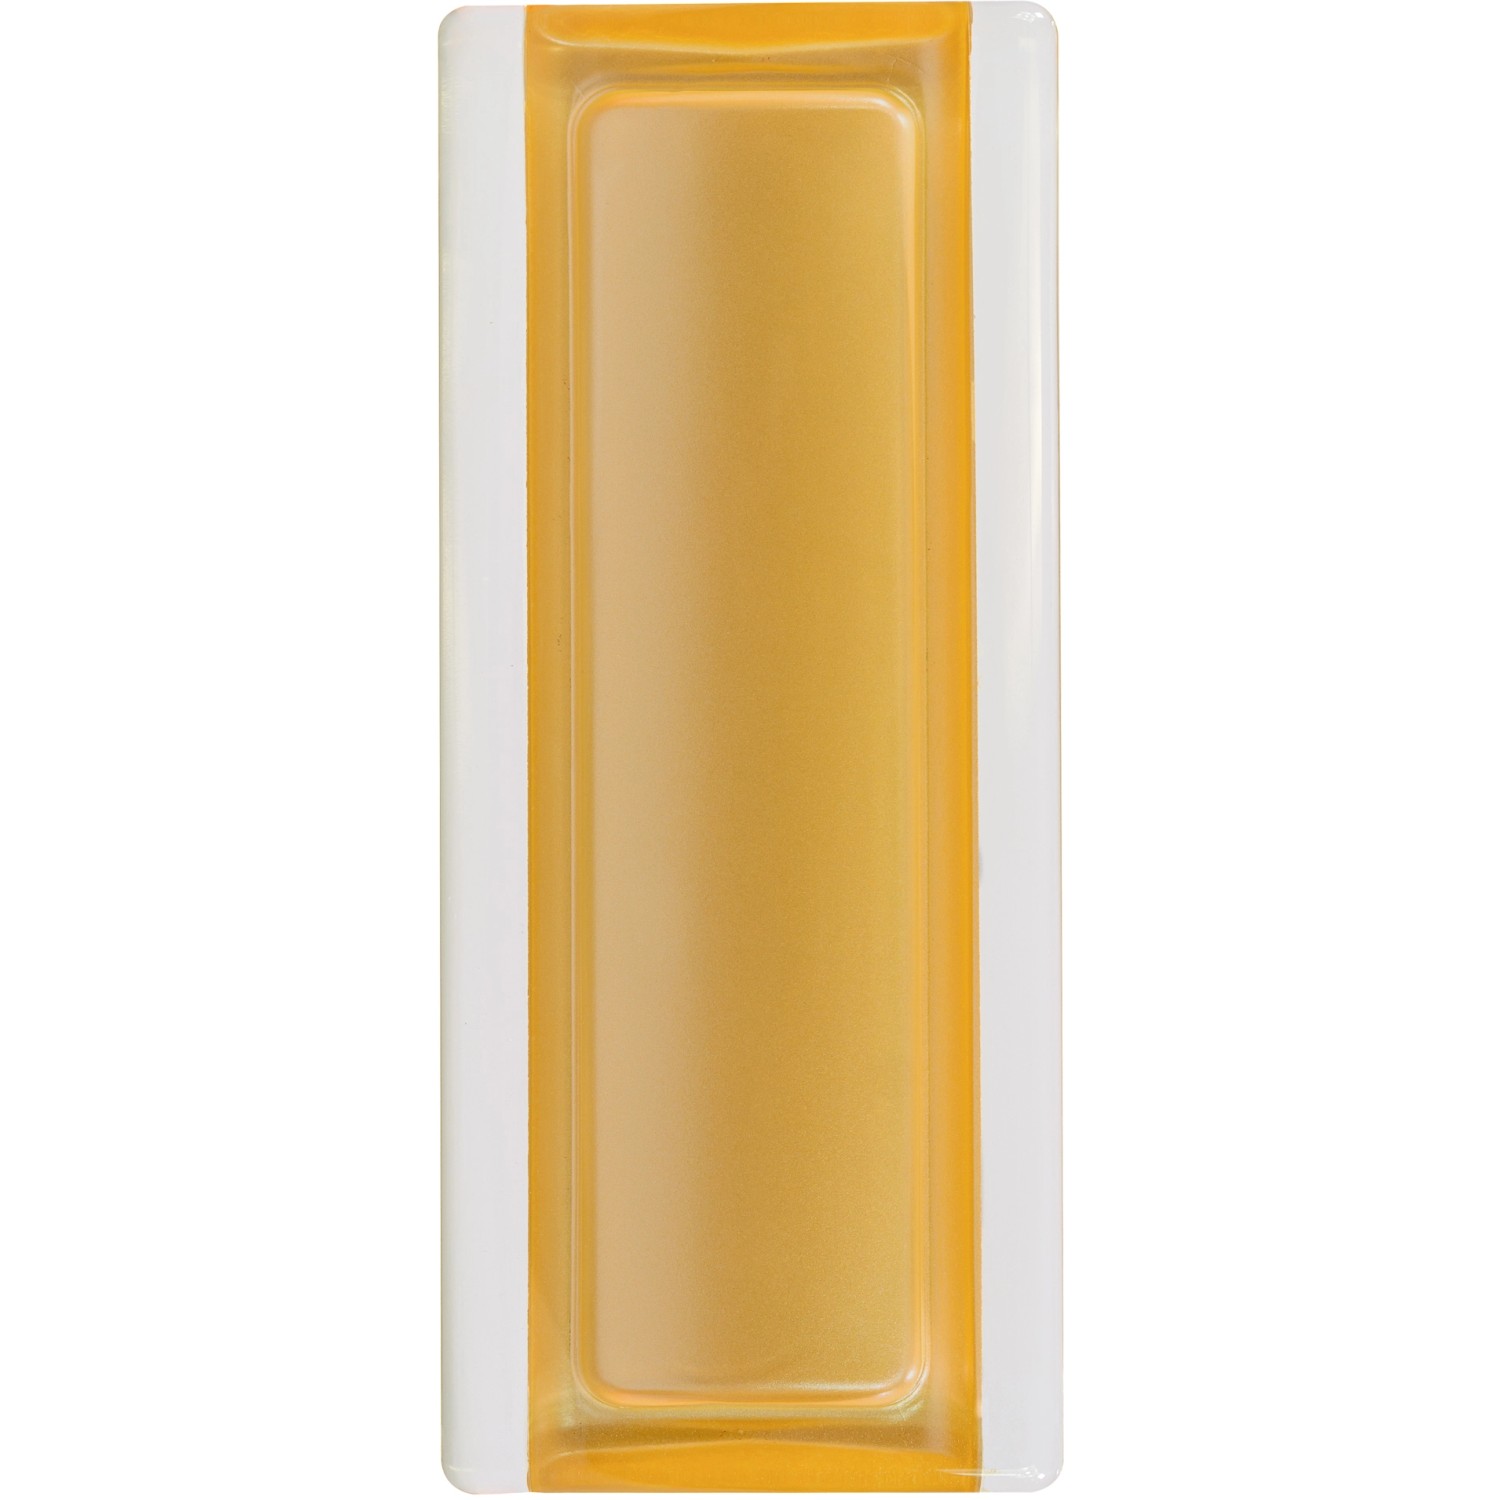 Echtglasprofil Gold 19 cm x 8 cm x 1 cm von Fuchs Design